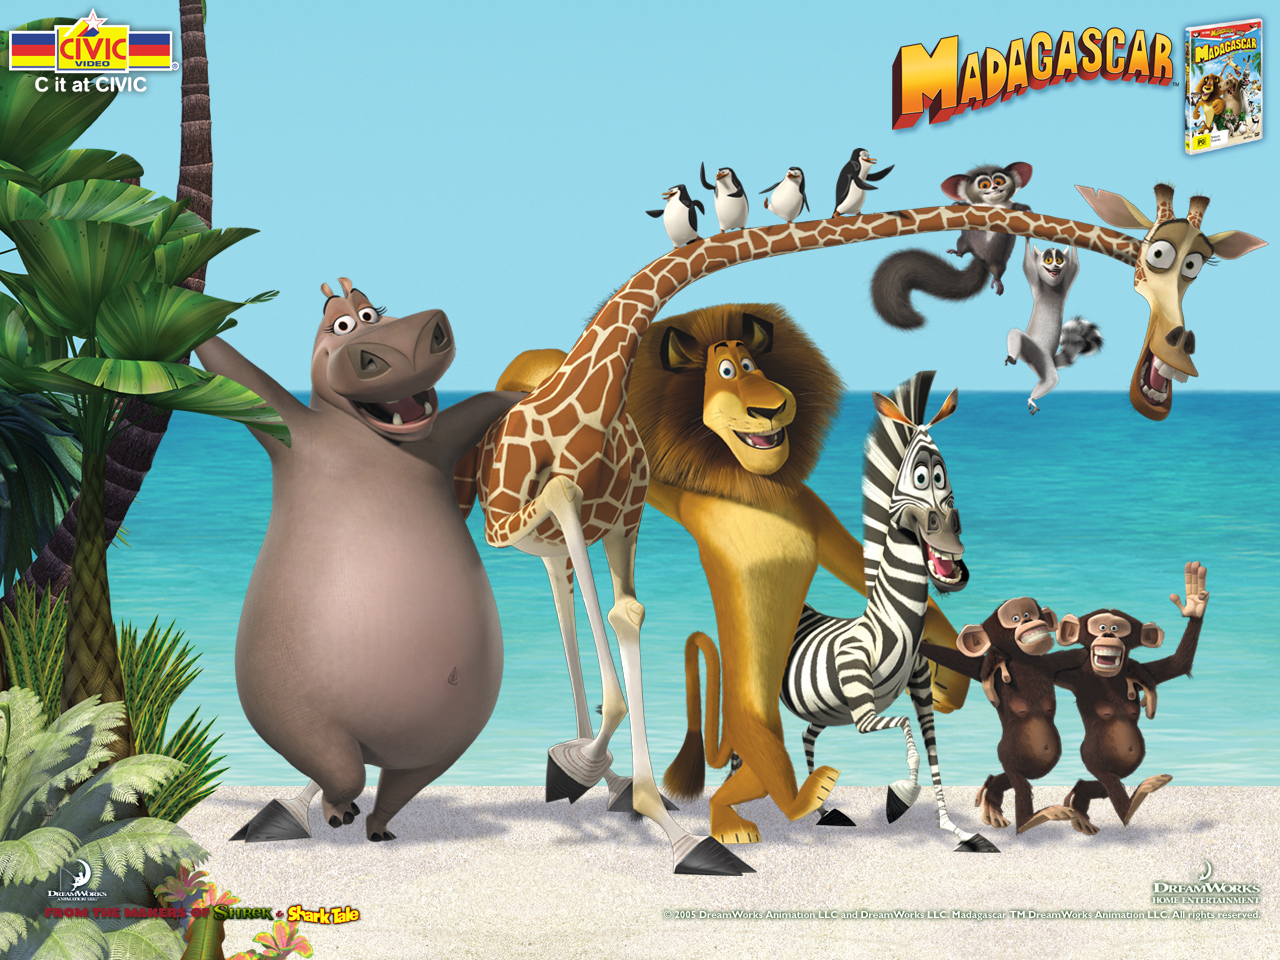 Jak se jmenují postavy z Madagaskaru?